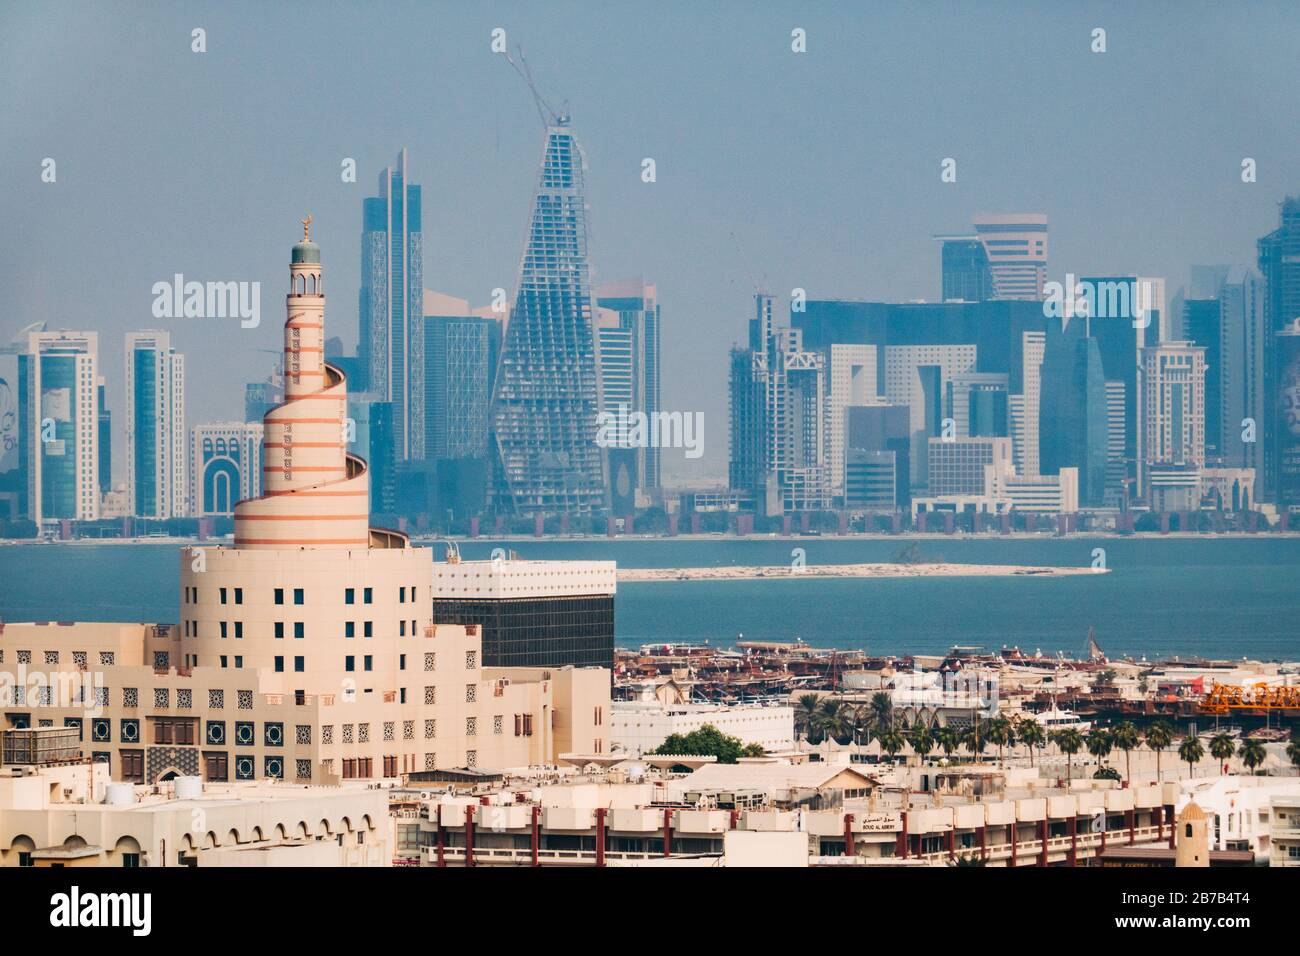 La famosa moschea a spirale a Doha, Qatar - una replica della Grande moschea di al-Mutawwakil a Samarra in Iraq. Lo skyline della città può essere visto dietro Foto Stock